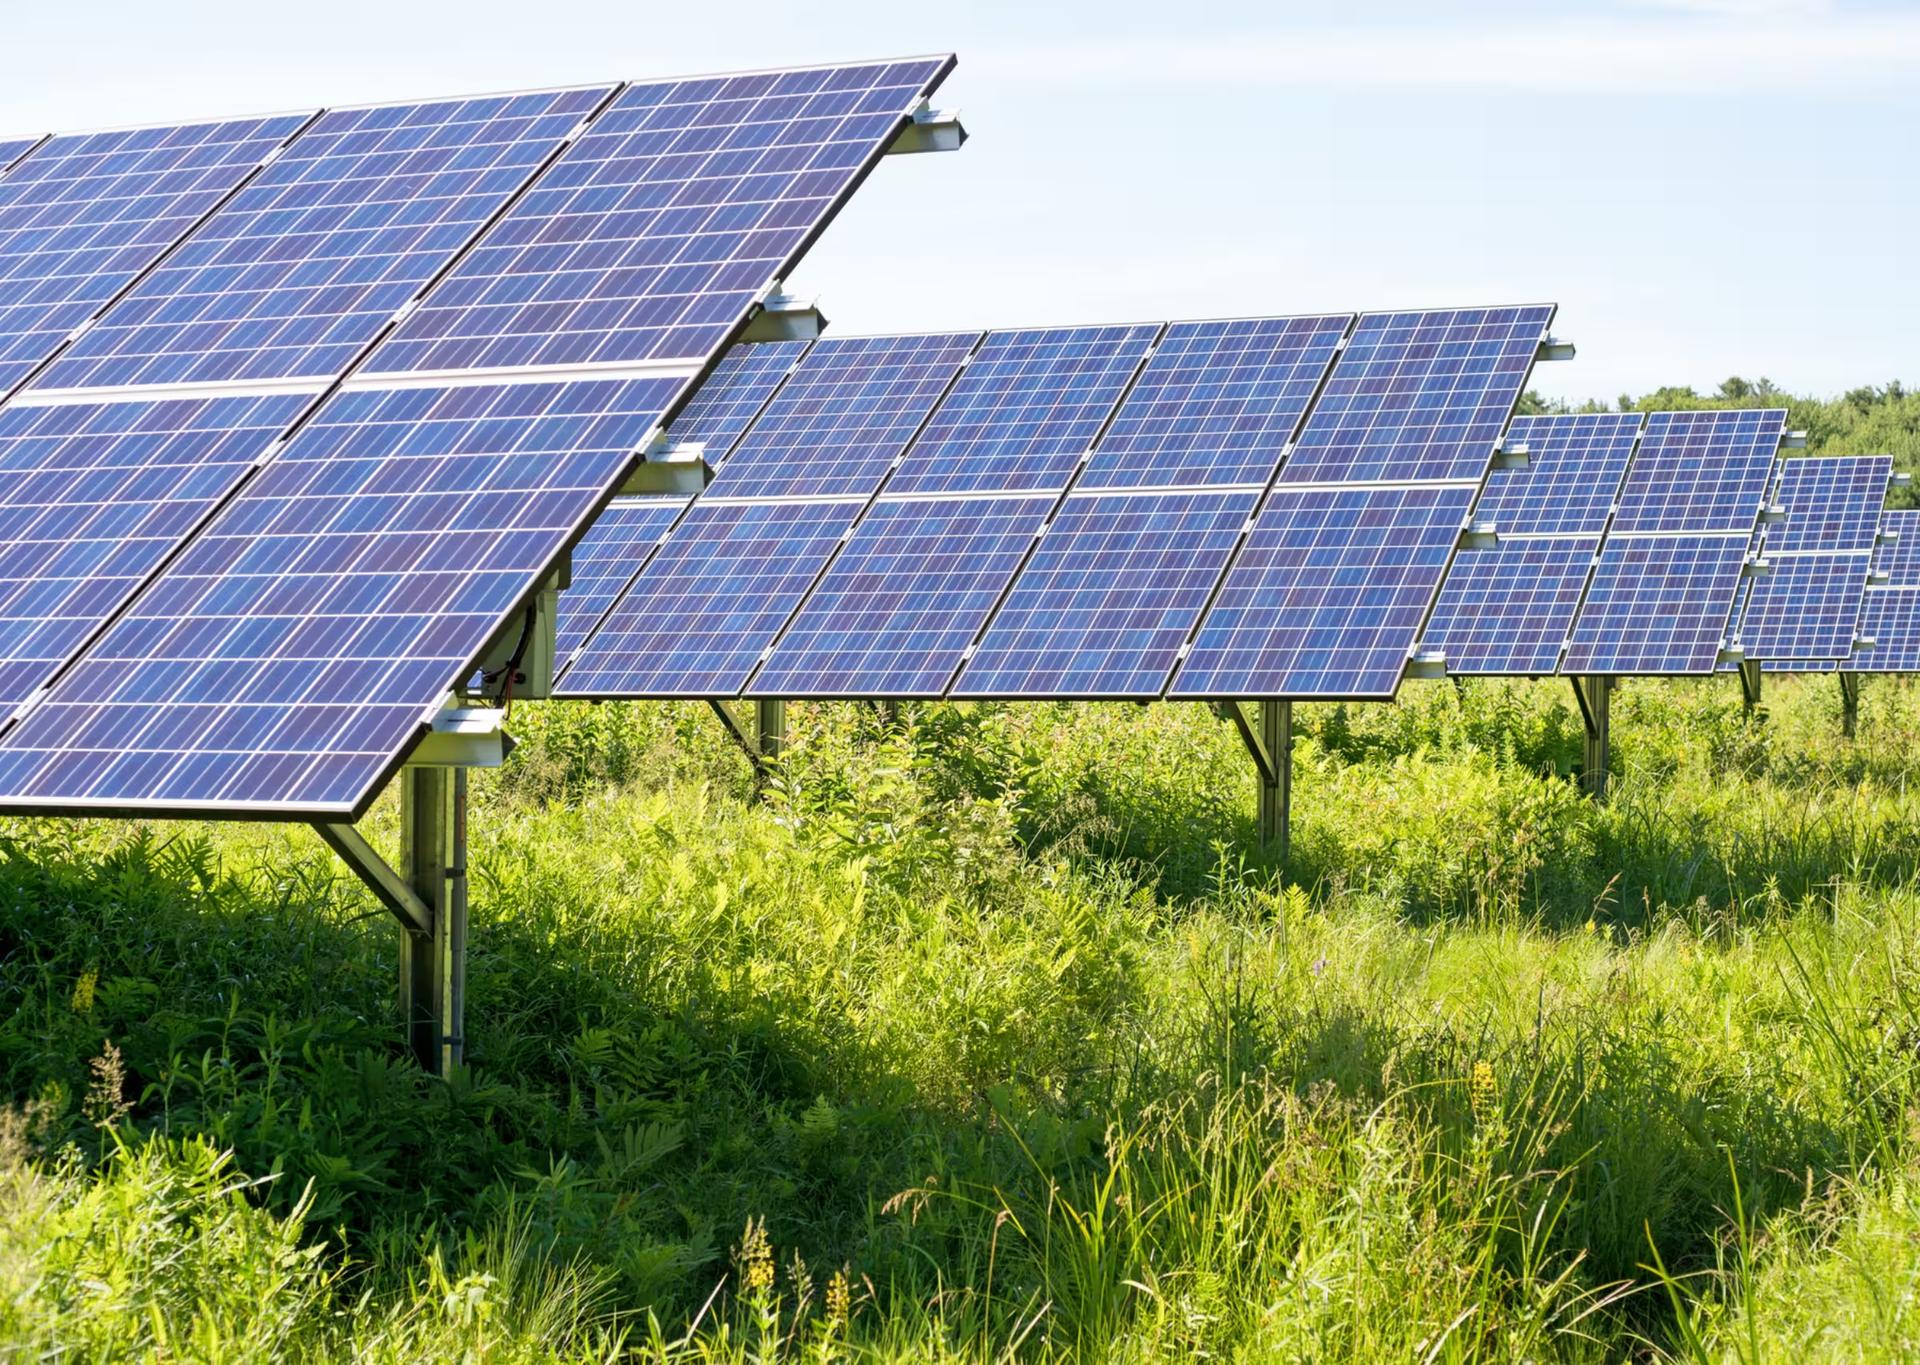 Impianto fotovoltaico in azienda e il calcolo del ROI